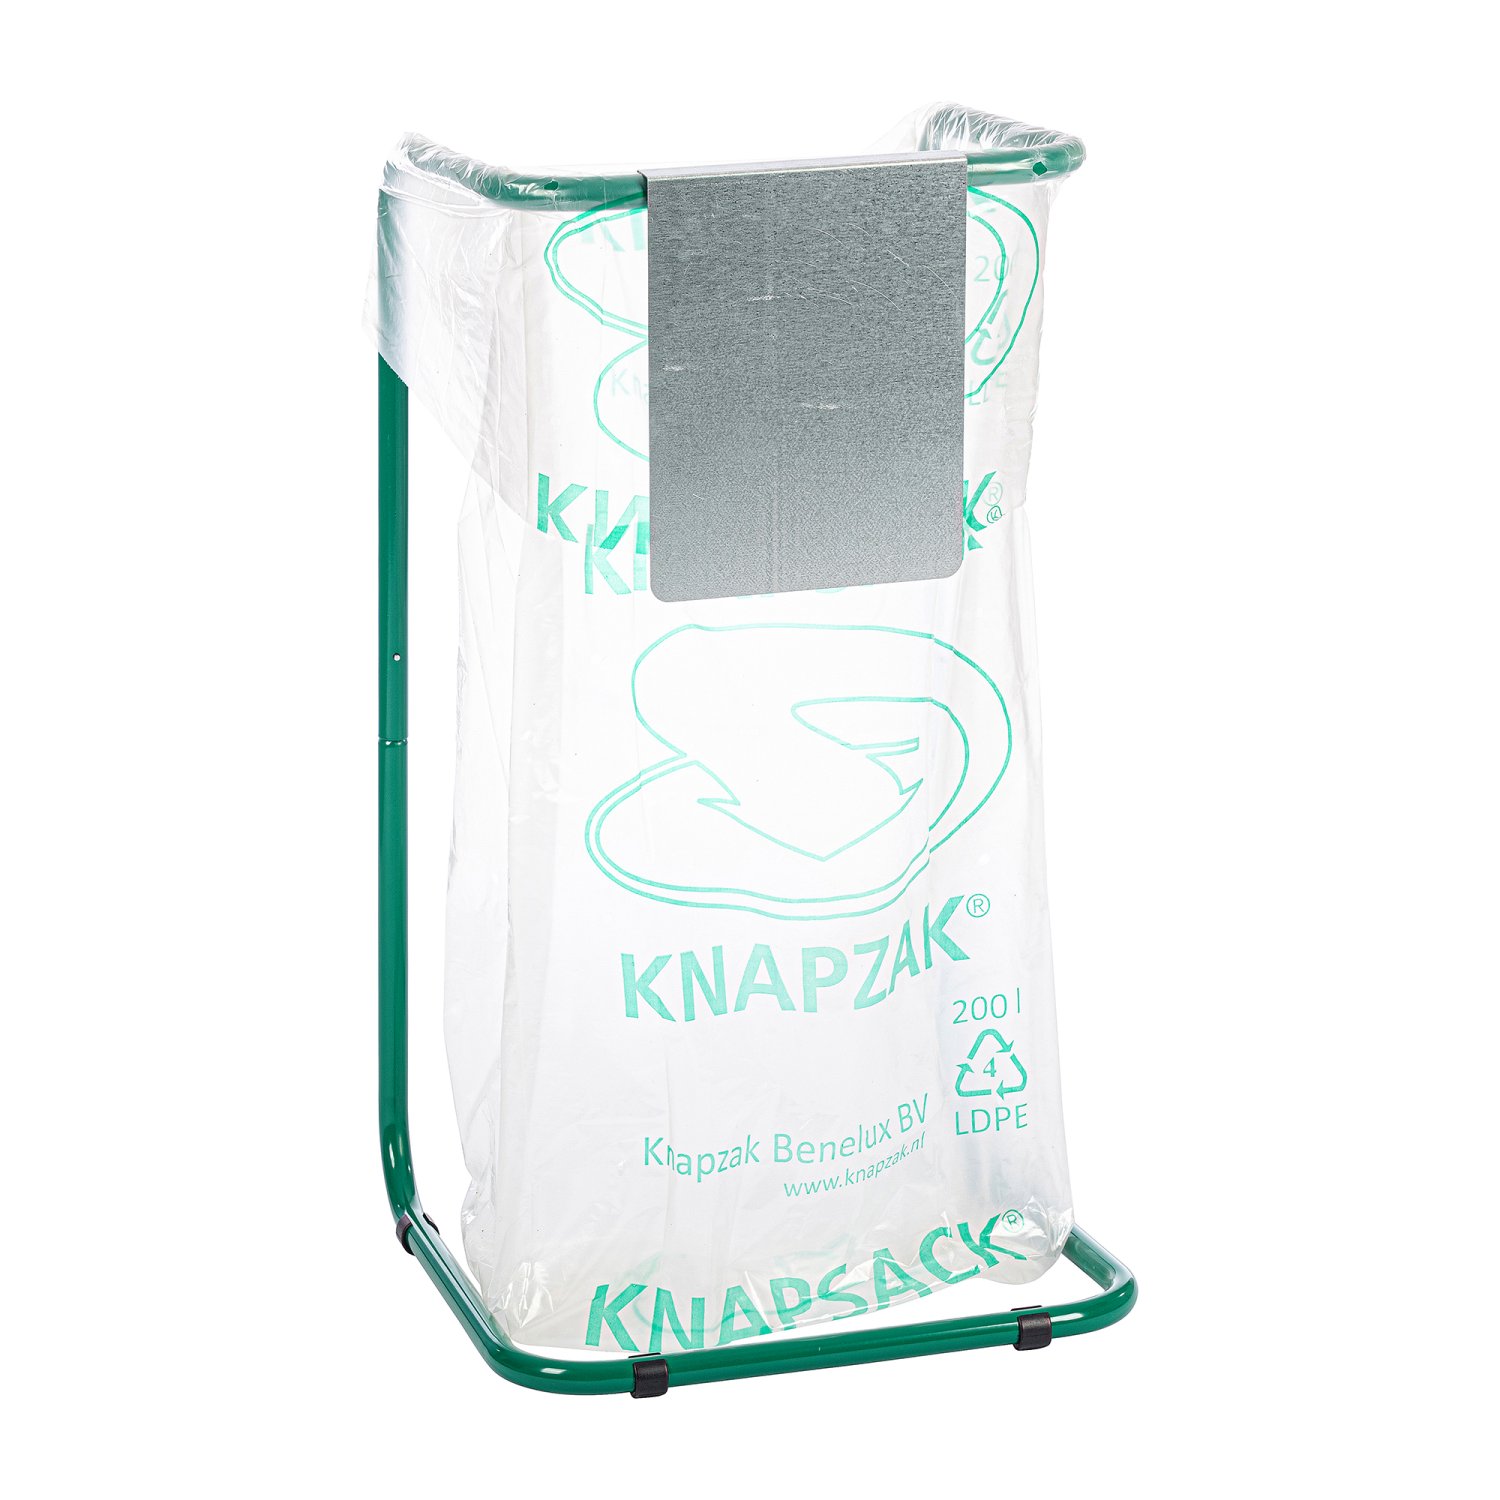 KIP3-4-10ZV Plaque d'information Que doit on jeter dans le système Knapzak ? Vous pouvez l’indiquer par moyen d’une plaque d’information. Ces plaques d’information sont disponibles pour les supports de Knapsack 60 à 2500 litres.